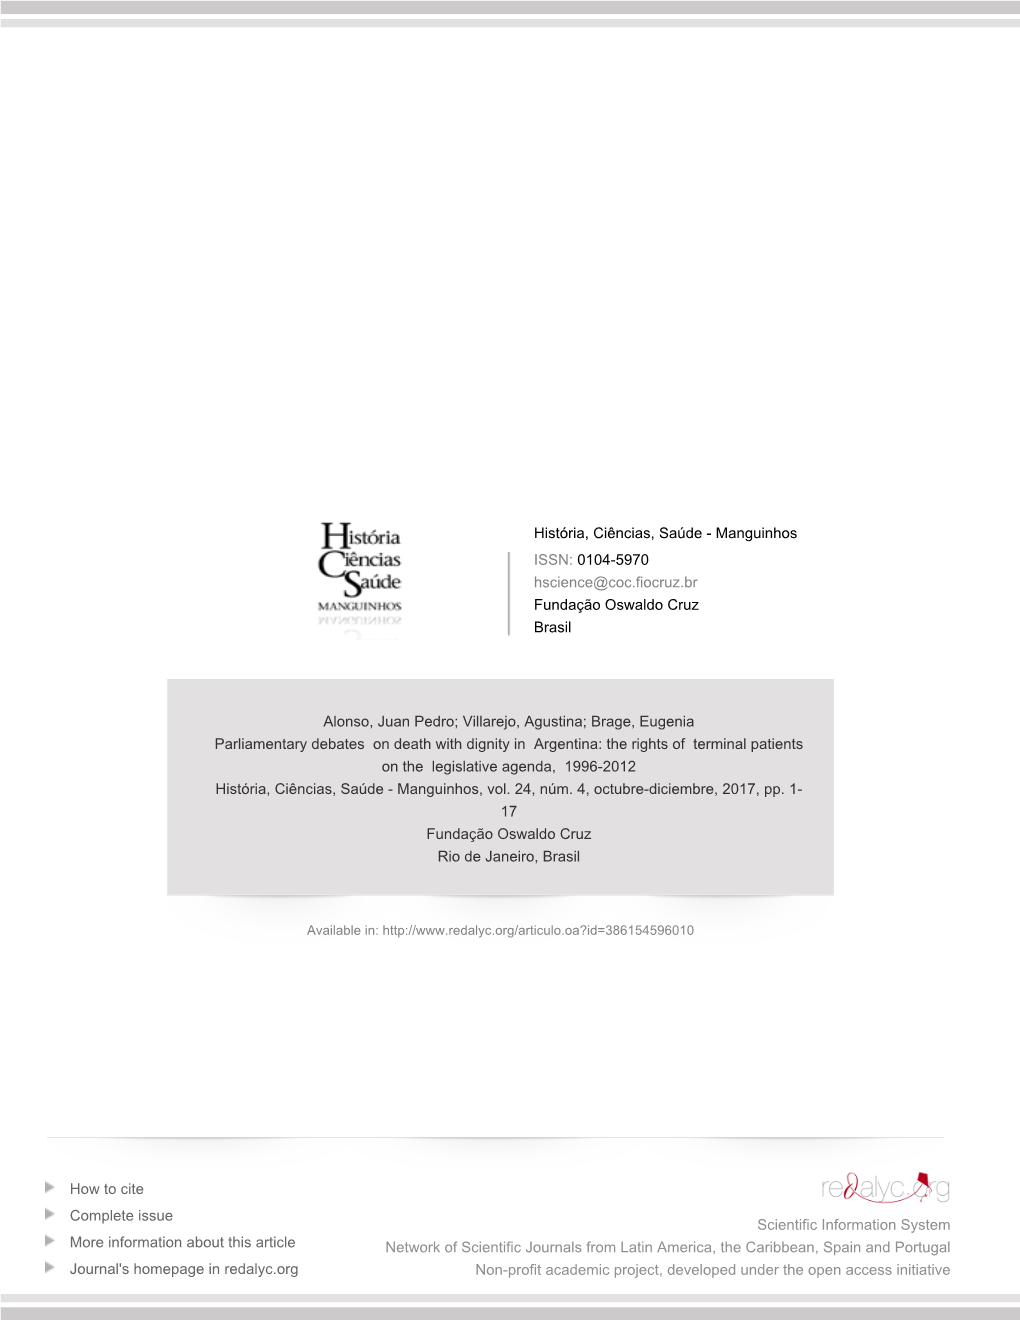 The Rights of Terminal Patients on the Legislative Agenda, 1996-2012 História, Ciências, Saúde - Manguinhos, Vol